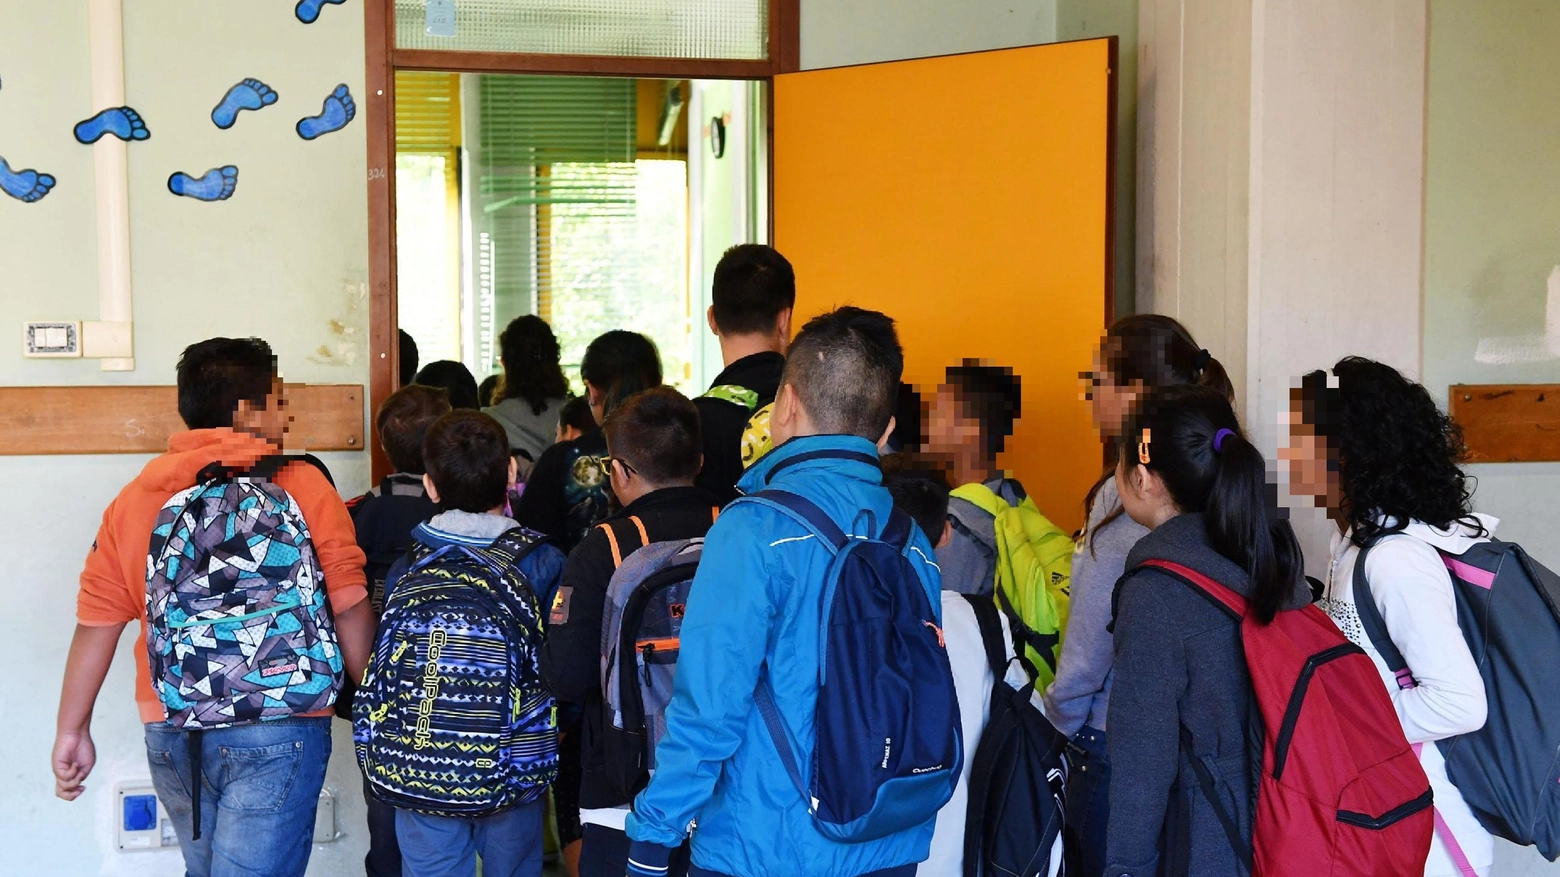 Cori da stadio in classe a Castelfranco Emilia. “Chi non salta juventino è...”. La maestra li filma e finisce nella bufera